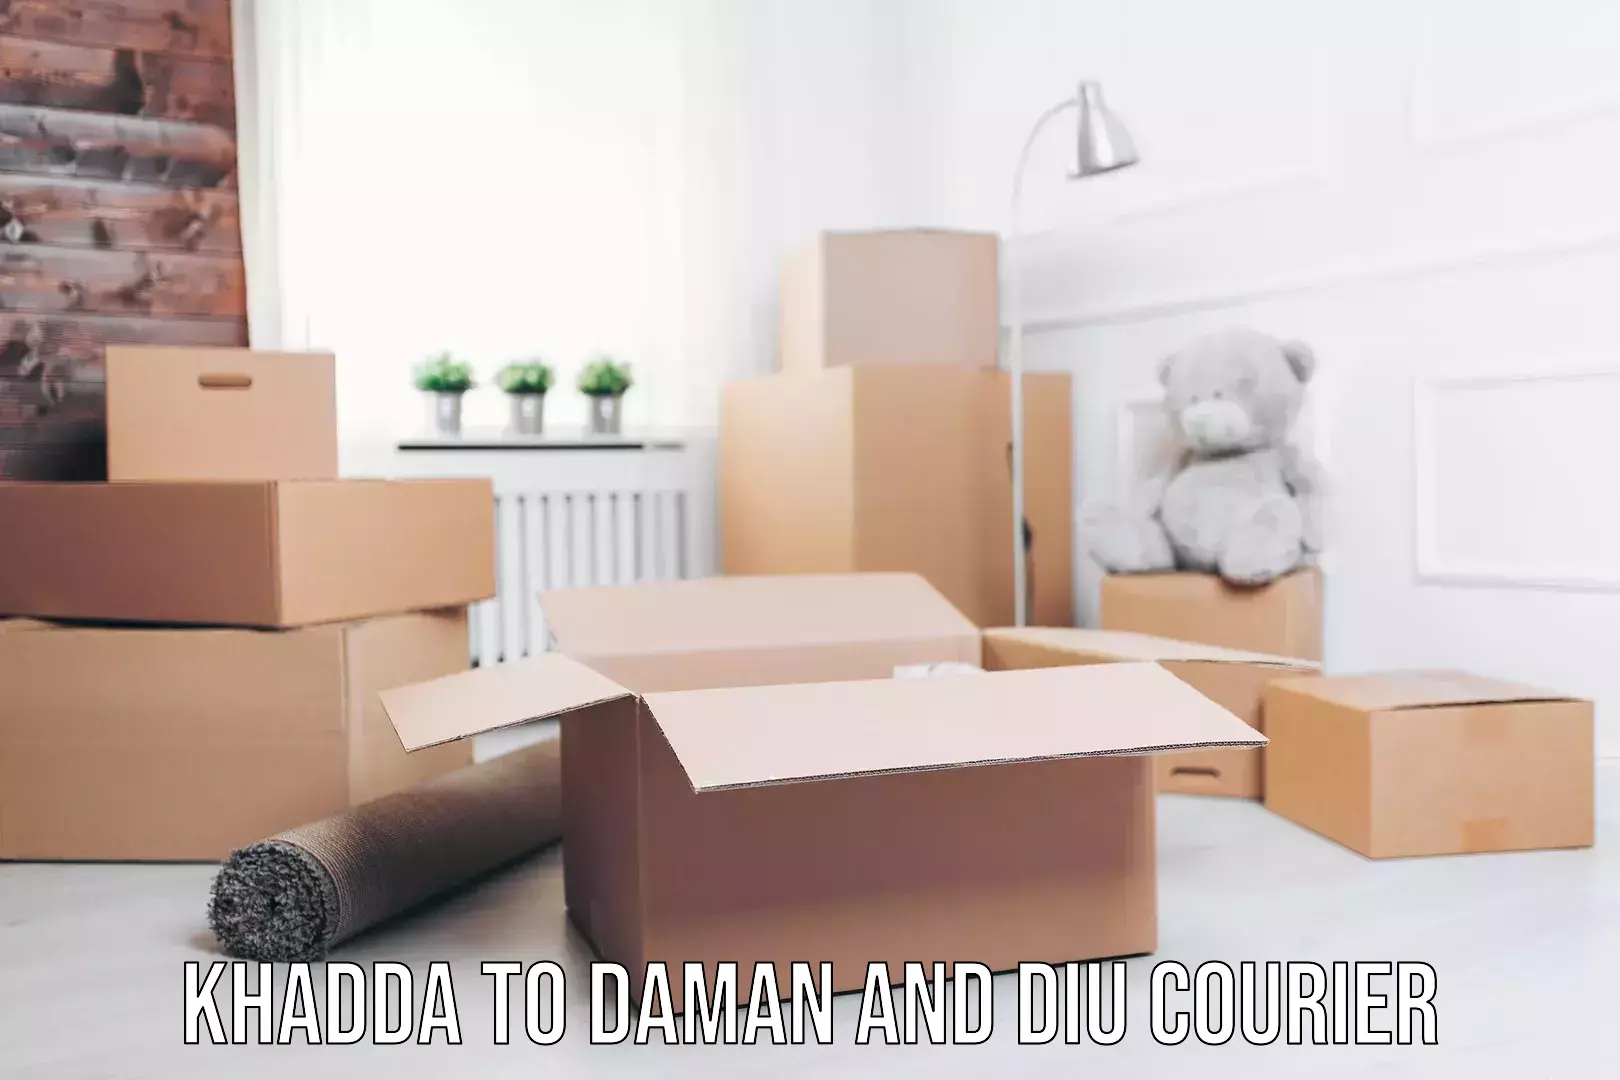 Home moving experts Khadda to Daman and Diu